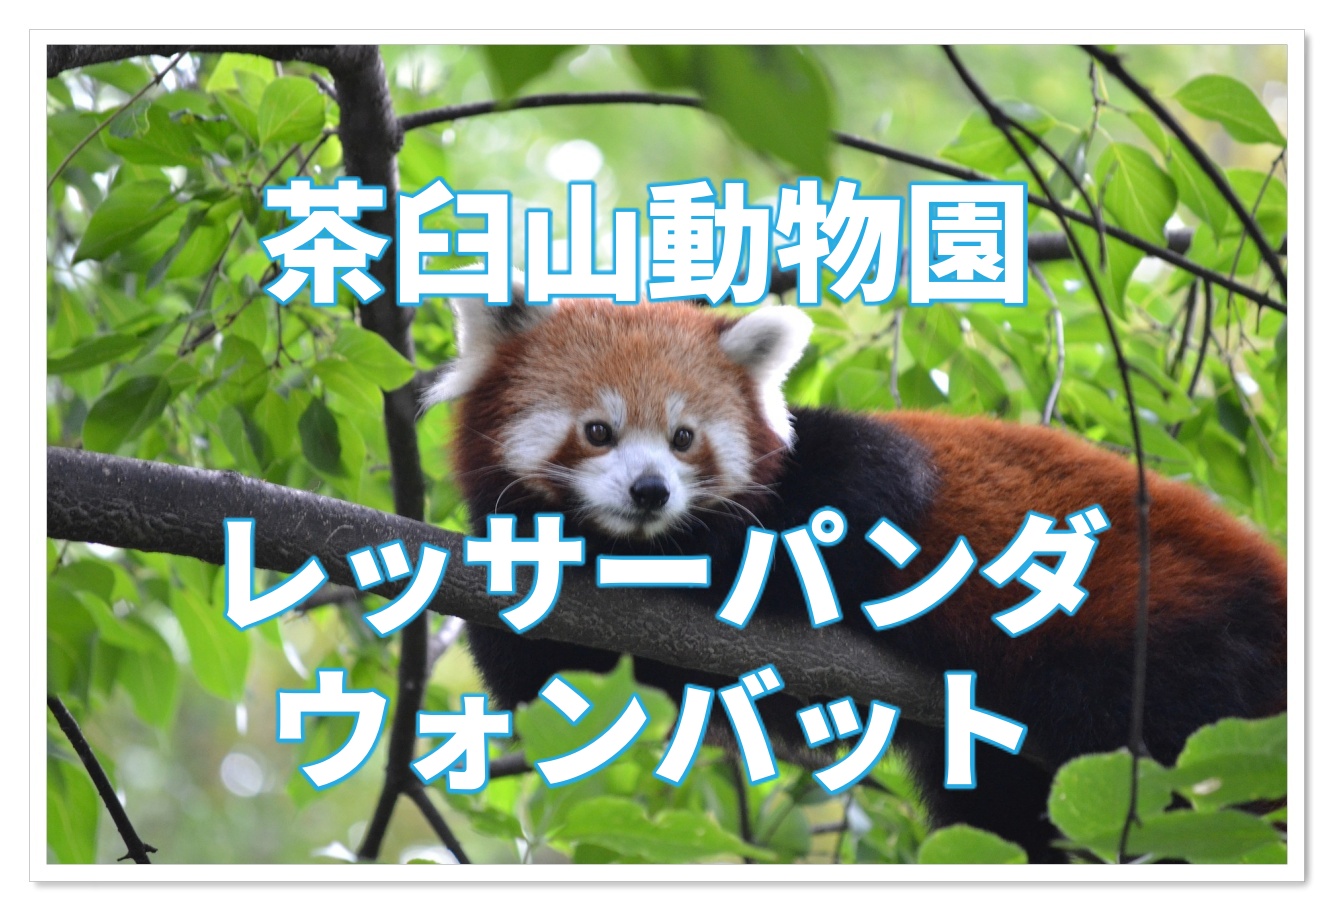 茶臼山動物園のレッサーパンダは日本一 ウォンバットも会える 子連れ旅行を楽しむ鉄板ブログ もう国内旅行は迷わせない